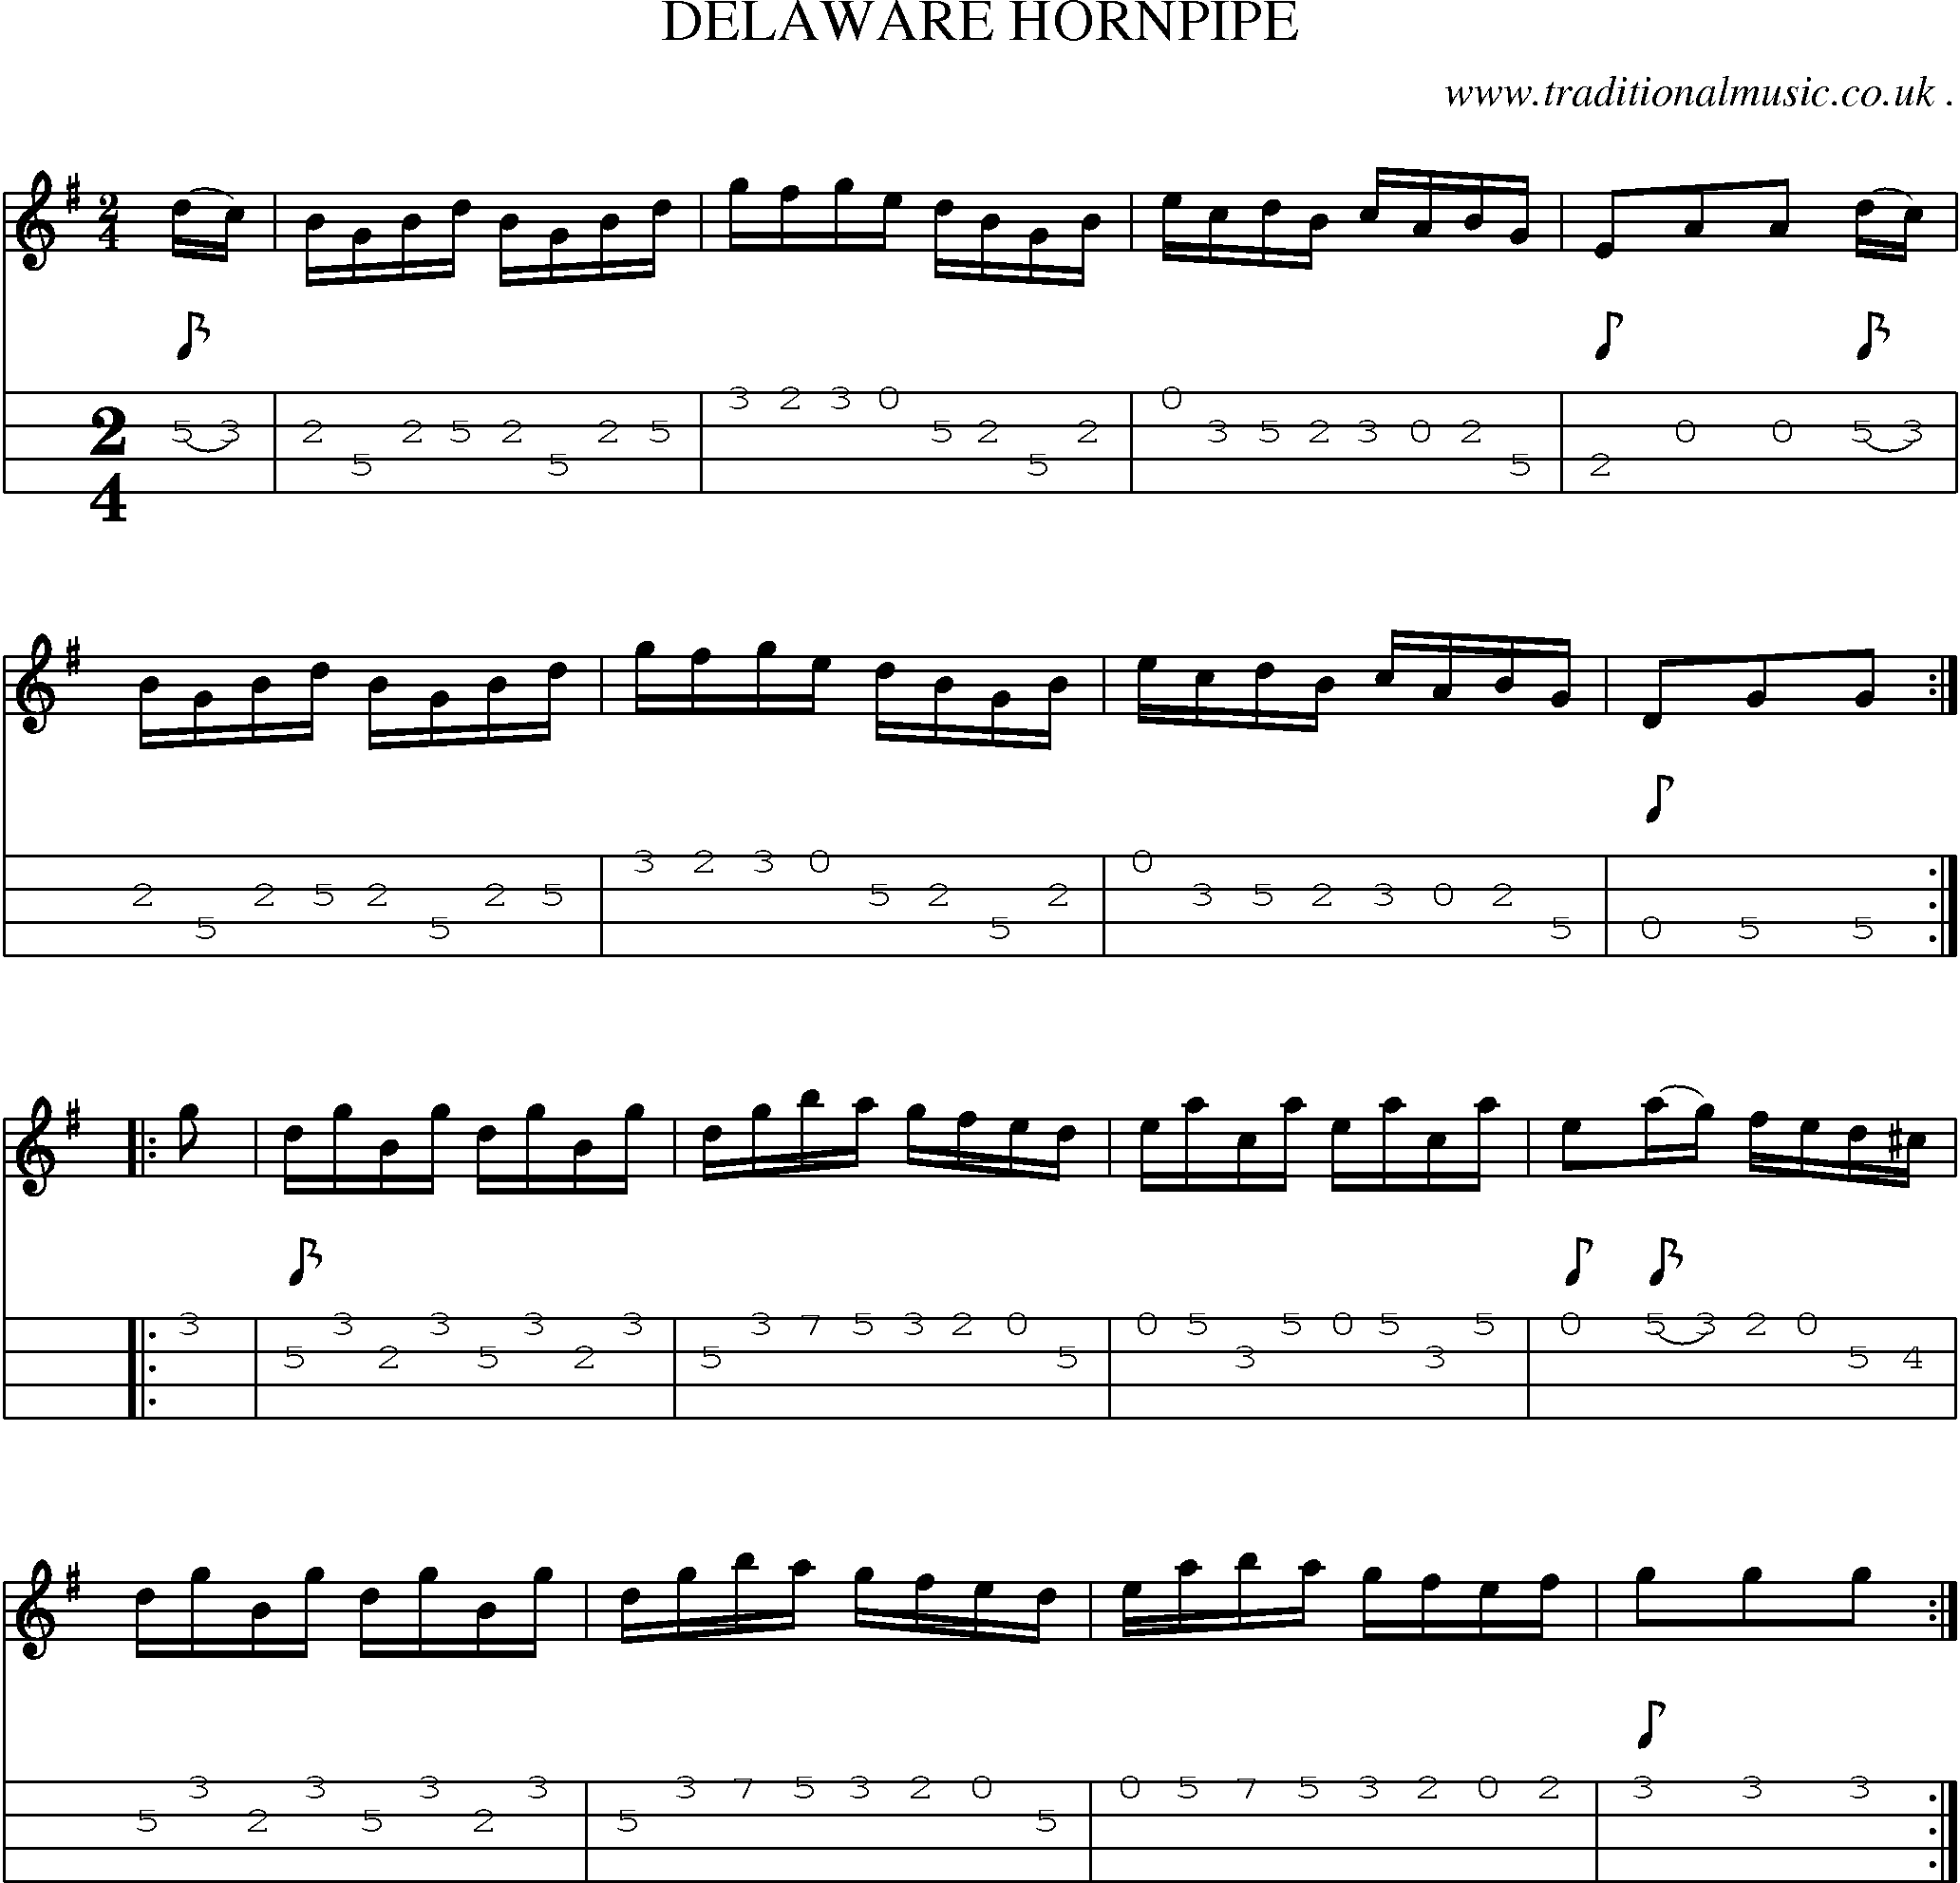 Music Score and Mandolin Tabs for Delaware Hornpipe